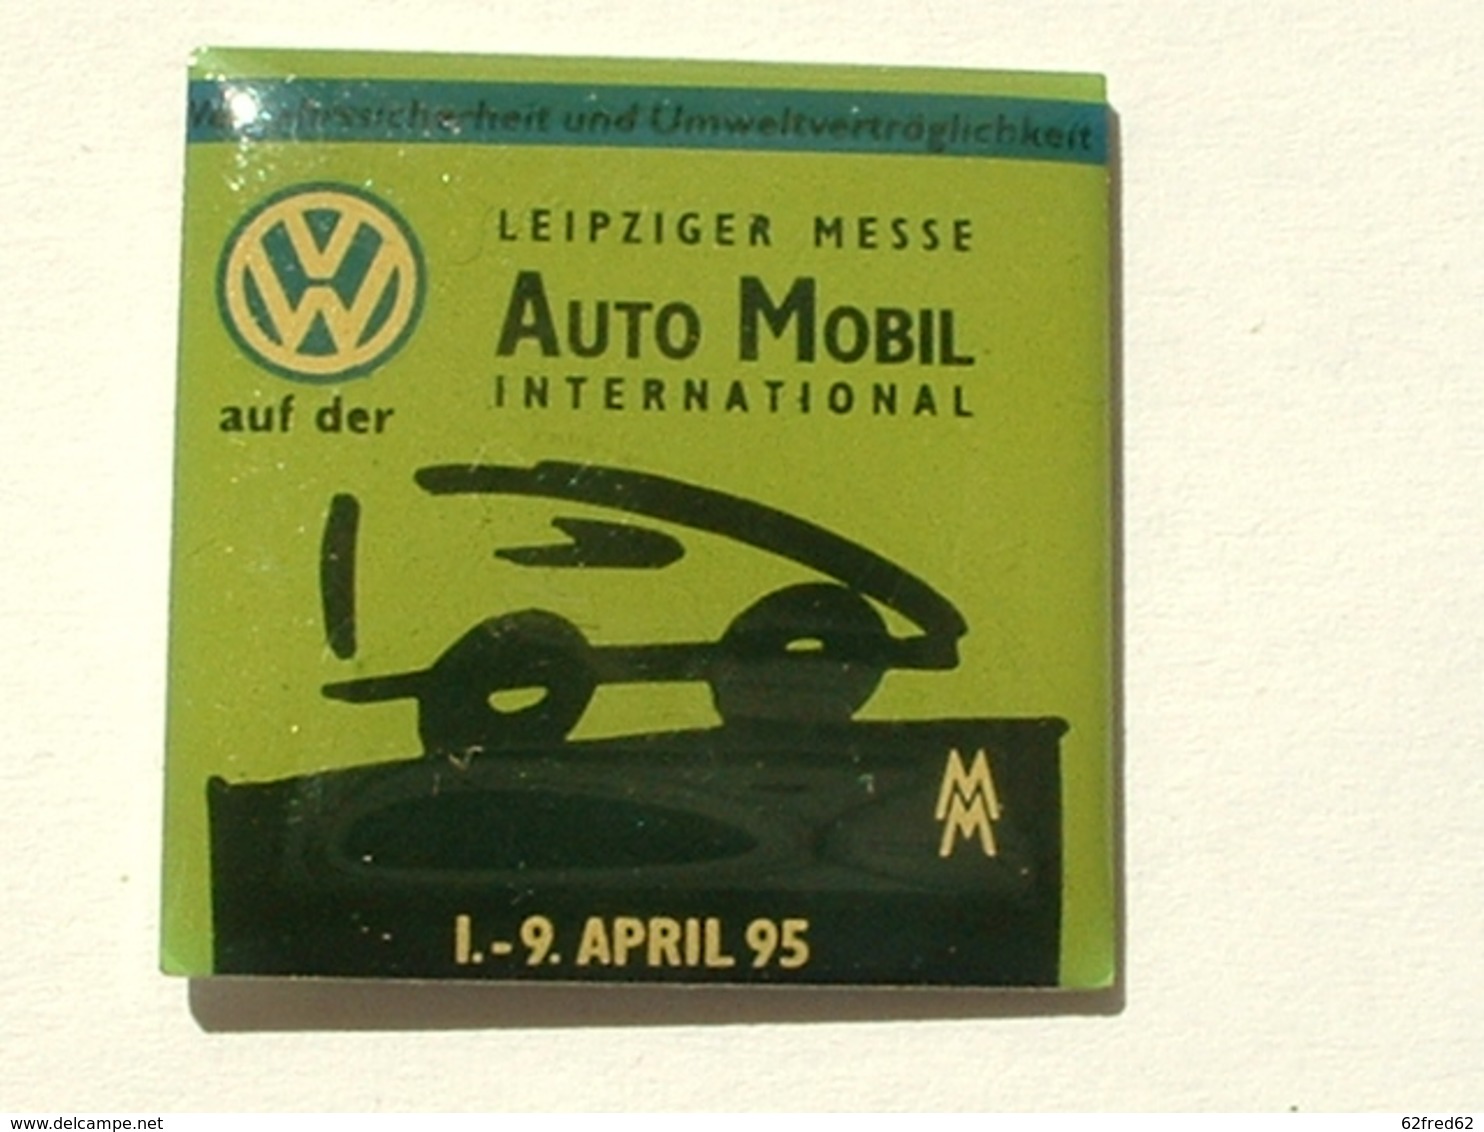 PIN'S VOLKSWAGEN - LEIPZIGER MESSE AUTO MOBIL INTERNATIONAL - 1 / 9 APRIL 95 - NOIR - Volkswagen